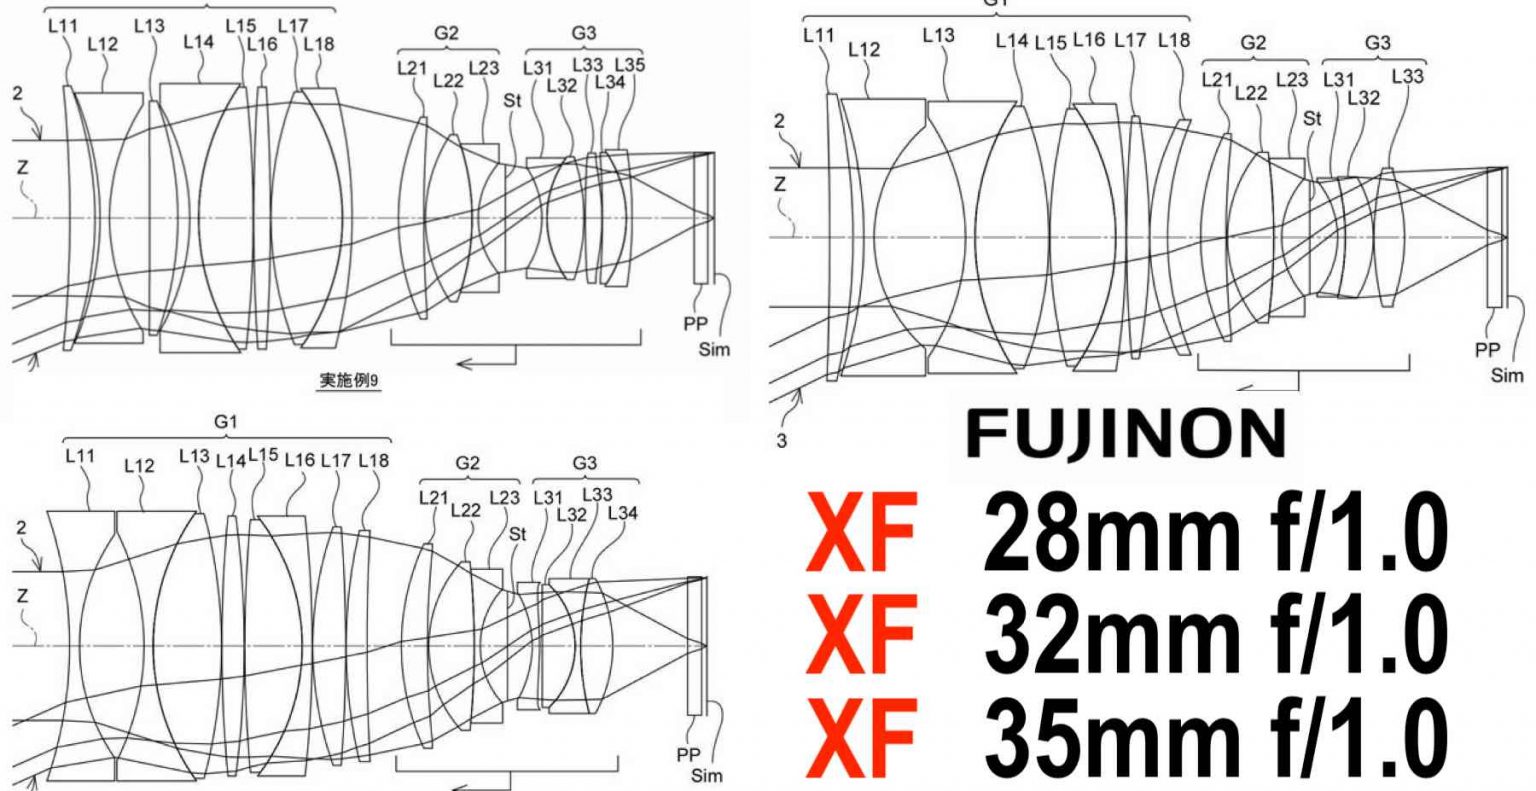 มาเป็นเซ็ตสว่างไสว เผยสิทธิบัตรเลนส์ใหม่จาก Fujifilm เกี่ยวกับเลนส์รูรับกว้าง f1.0